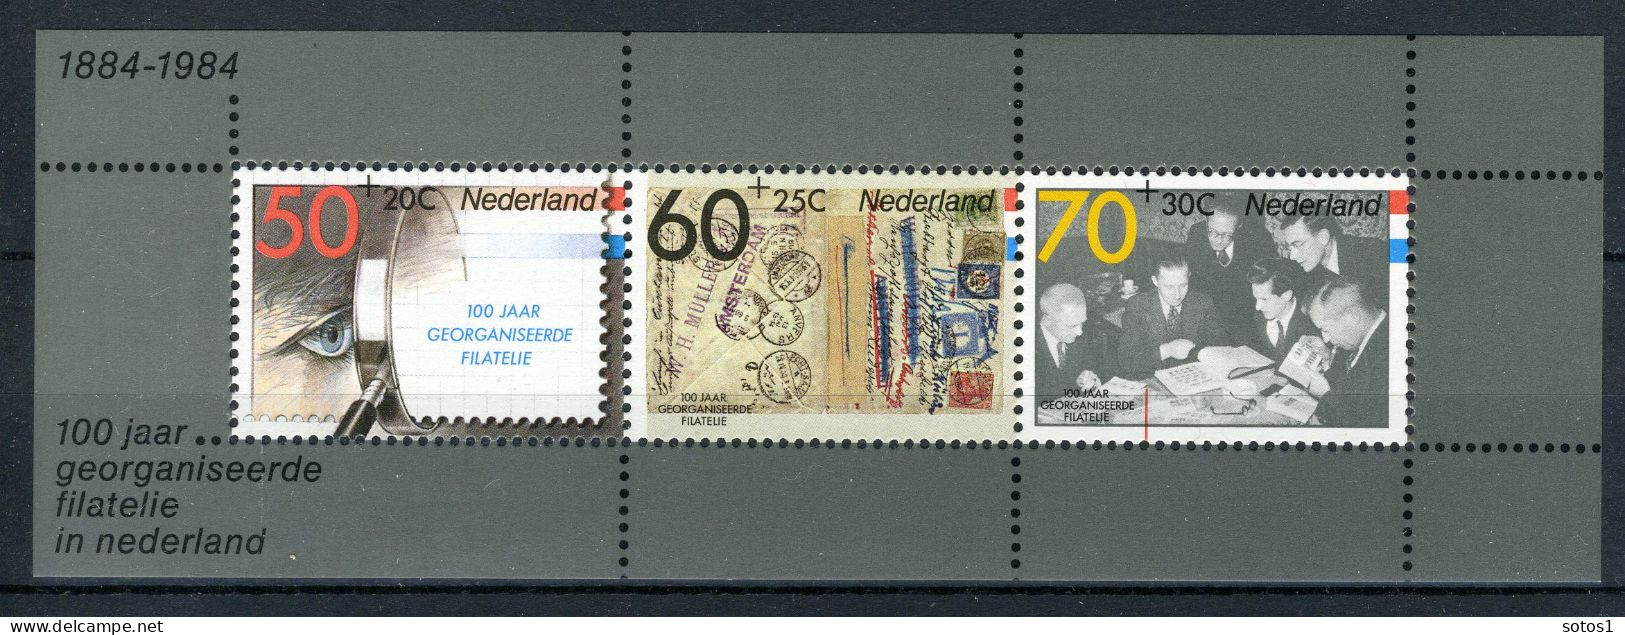 NEDERLAND 1313 MNH Blok 1984 - Filacento -2 - Blokken